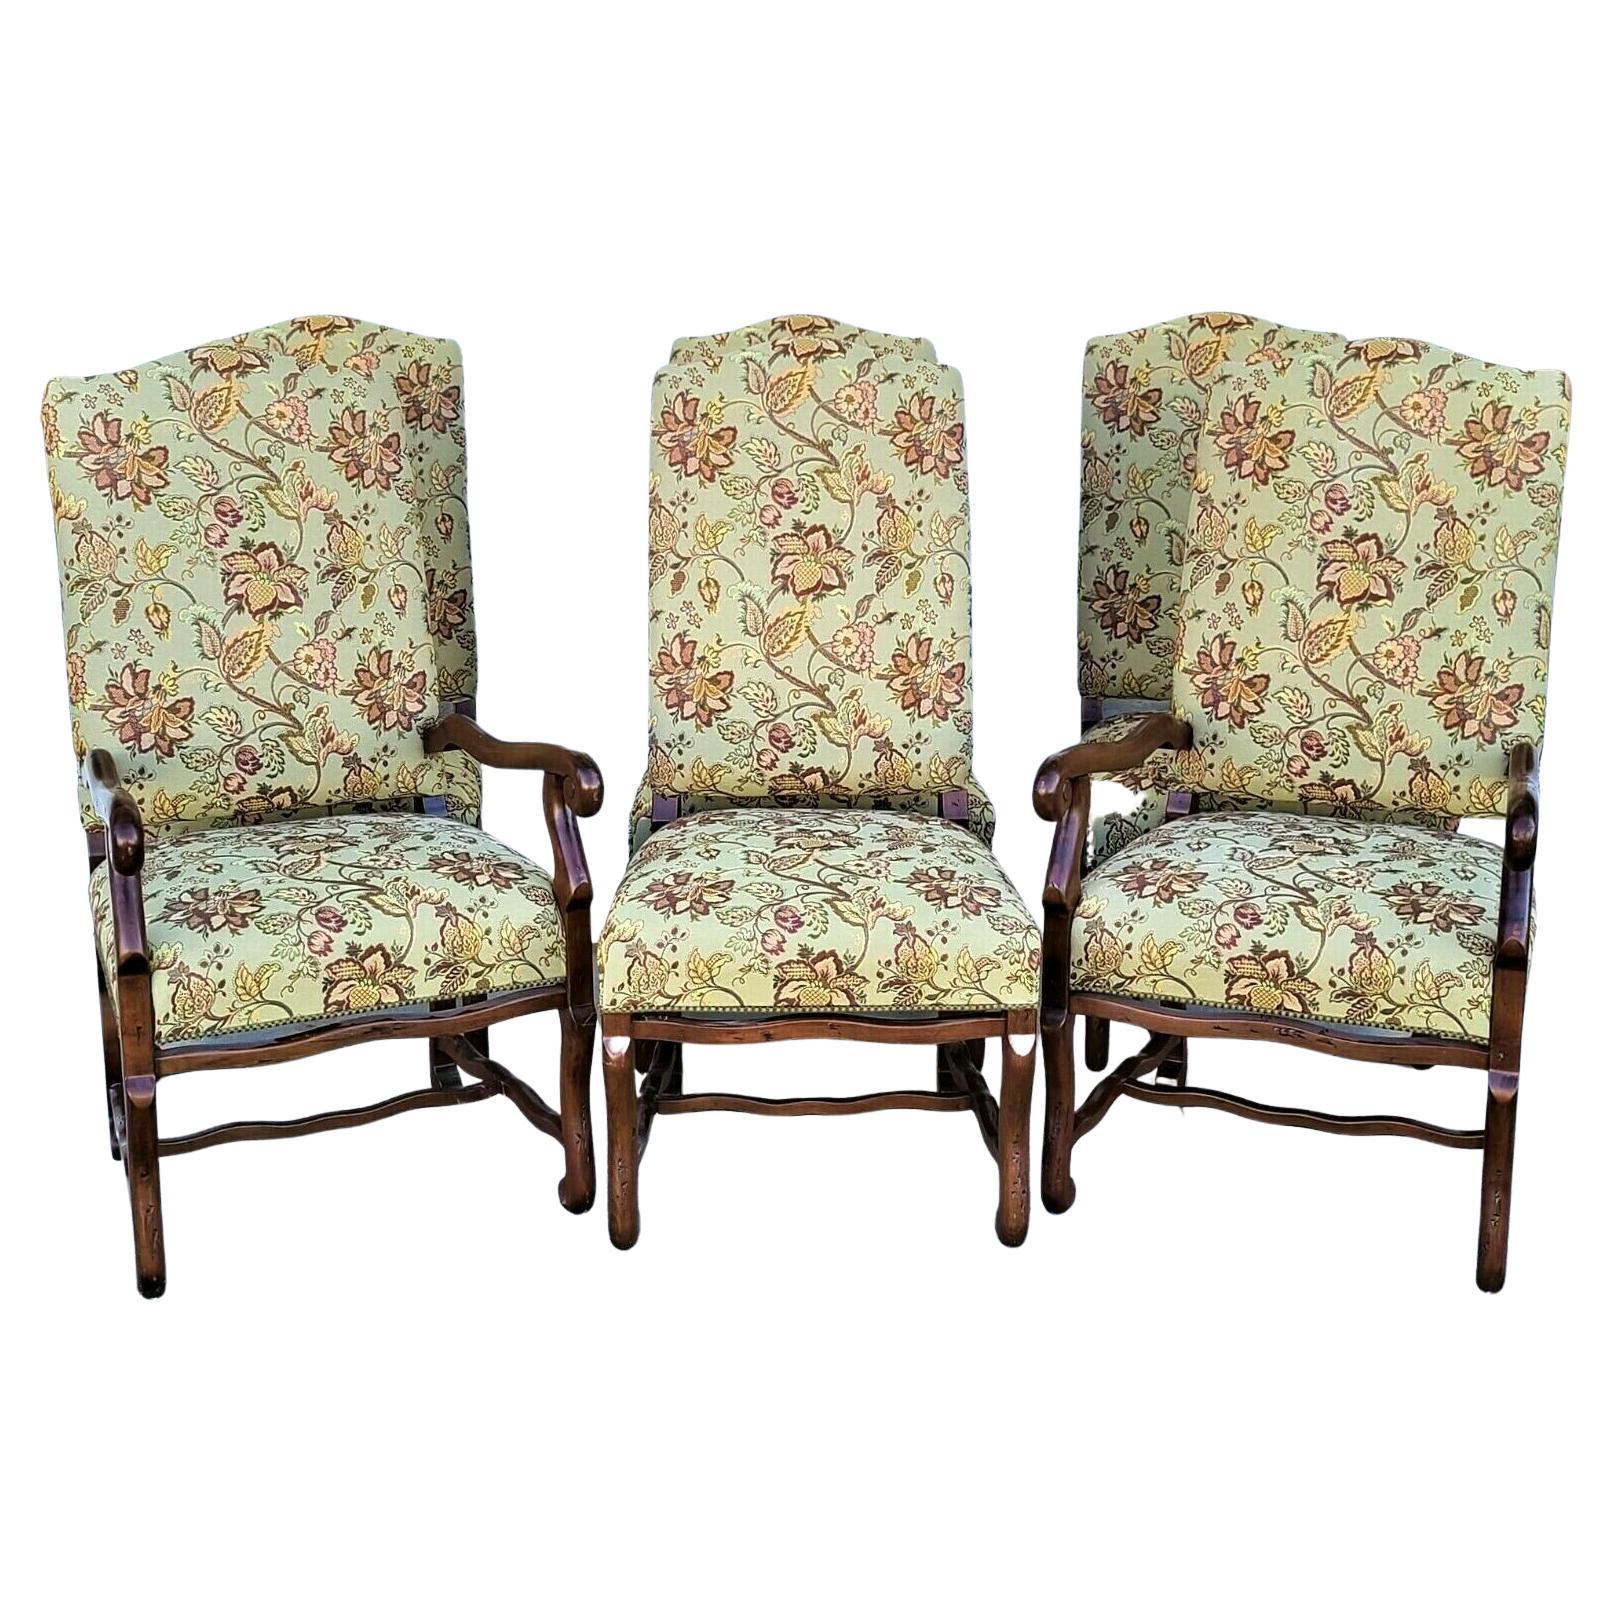 Esszimmerstühle mit Mutton-Beinen im Louis XIII.-Stil, 6er-Set